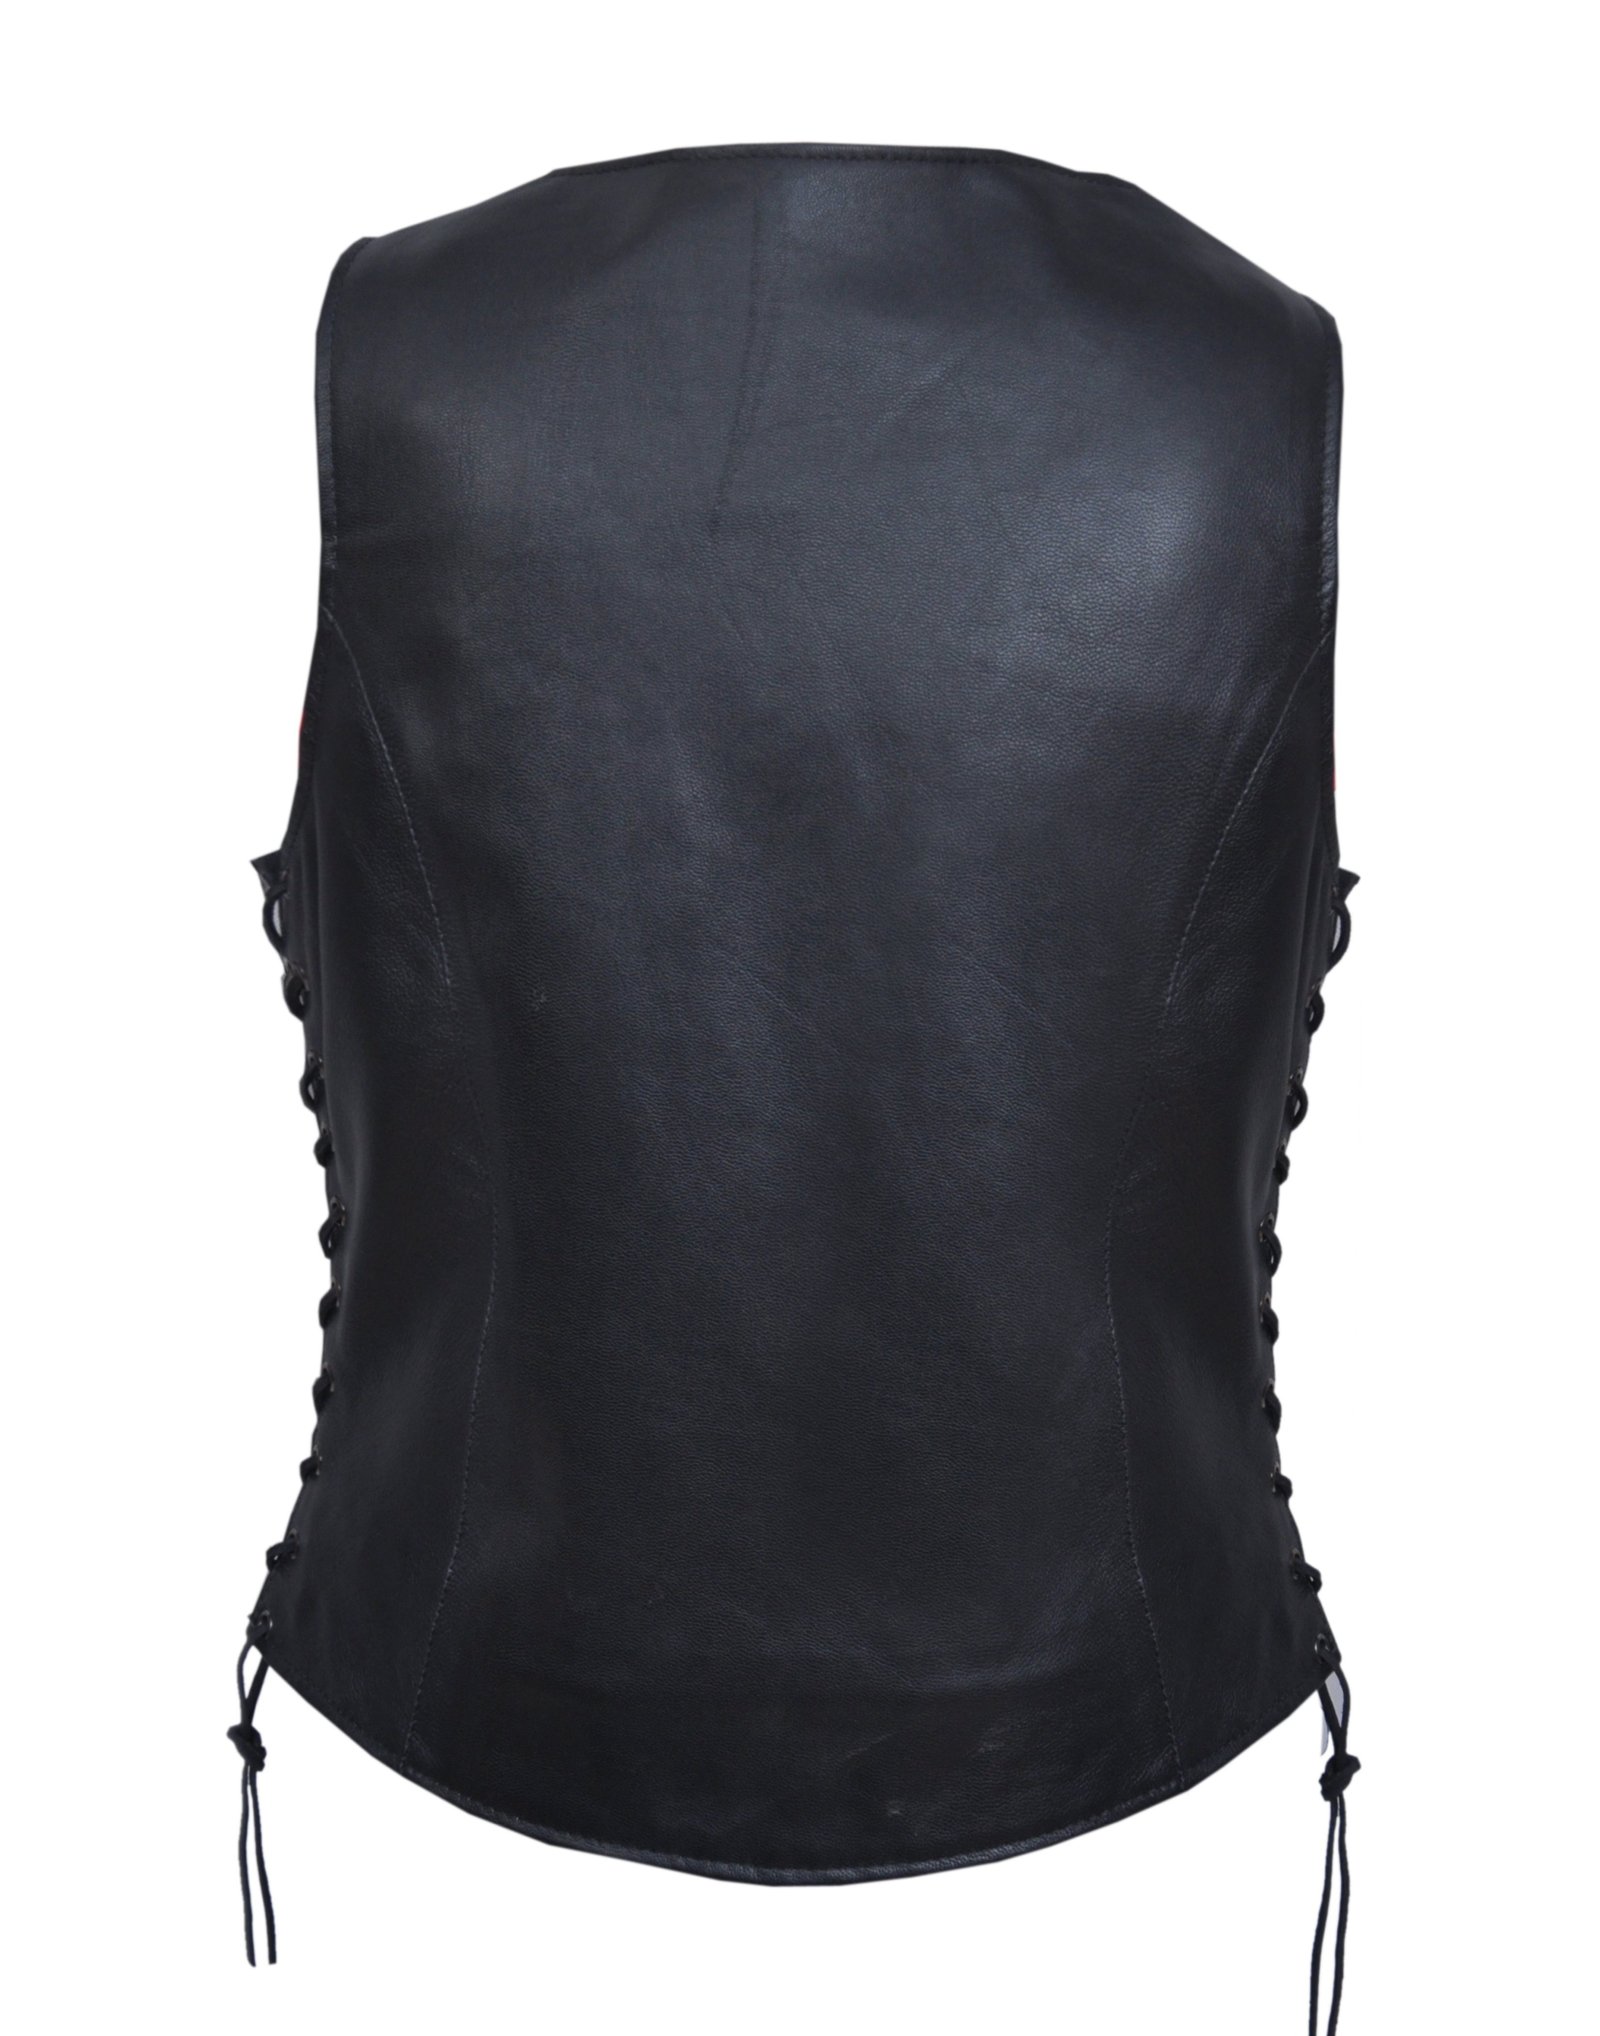 Leather Vest - Women's - Black Paisley Lining - Side Laces - 6890-00-UN